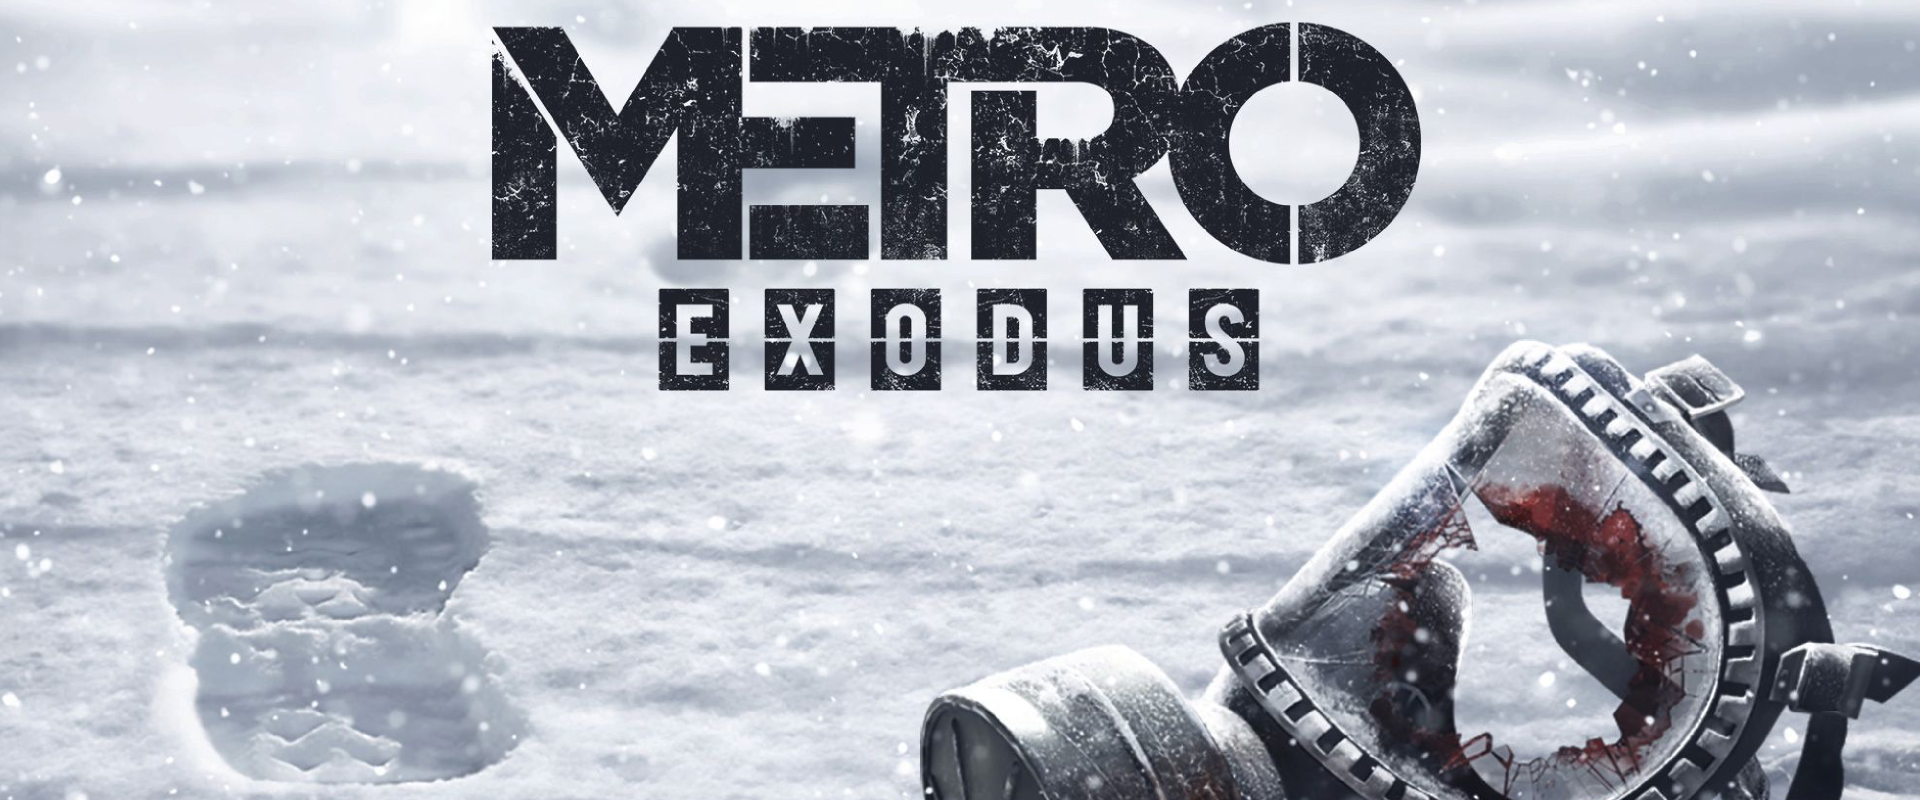 Betekintést nyertünk a Metro Exodus történetébe - videó